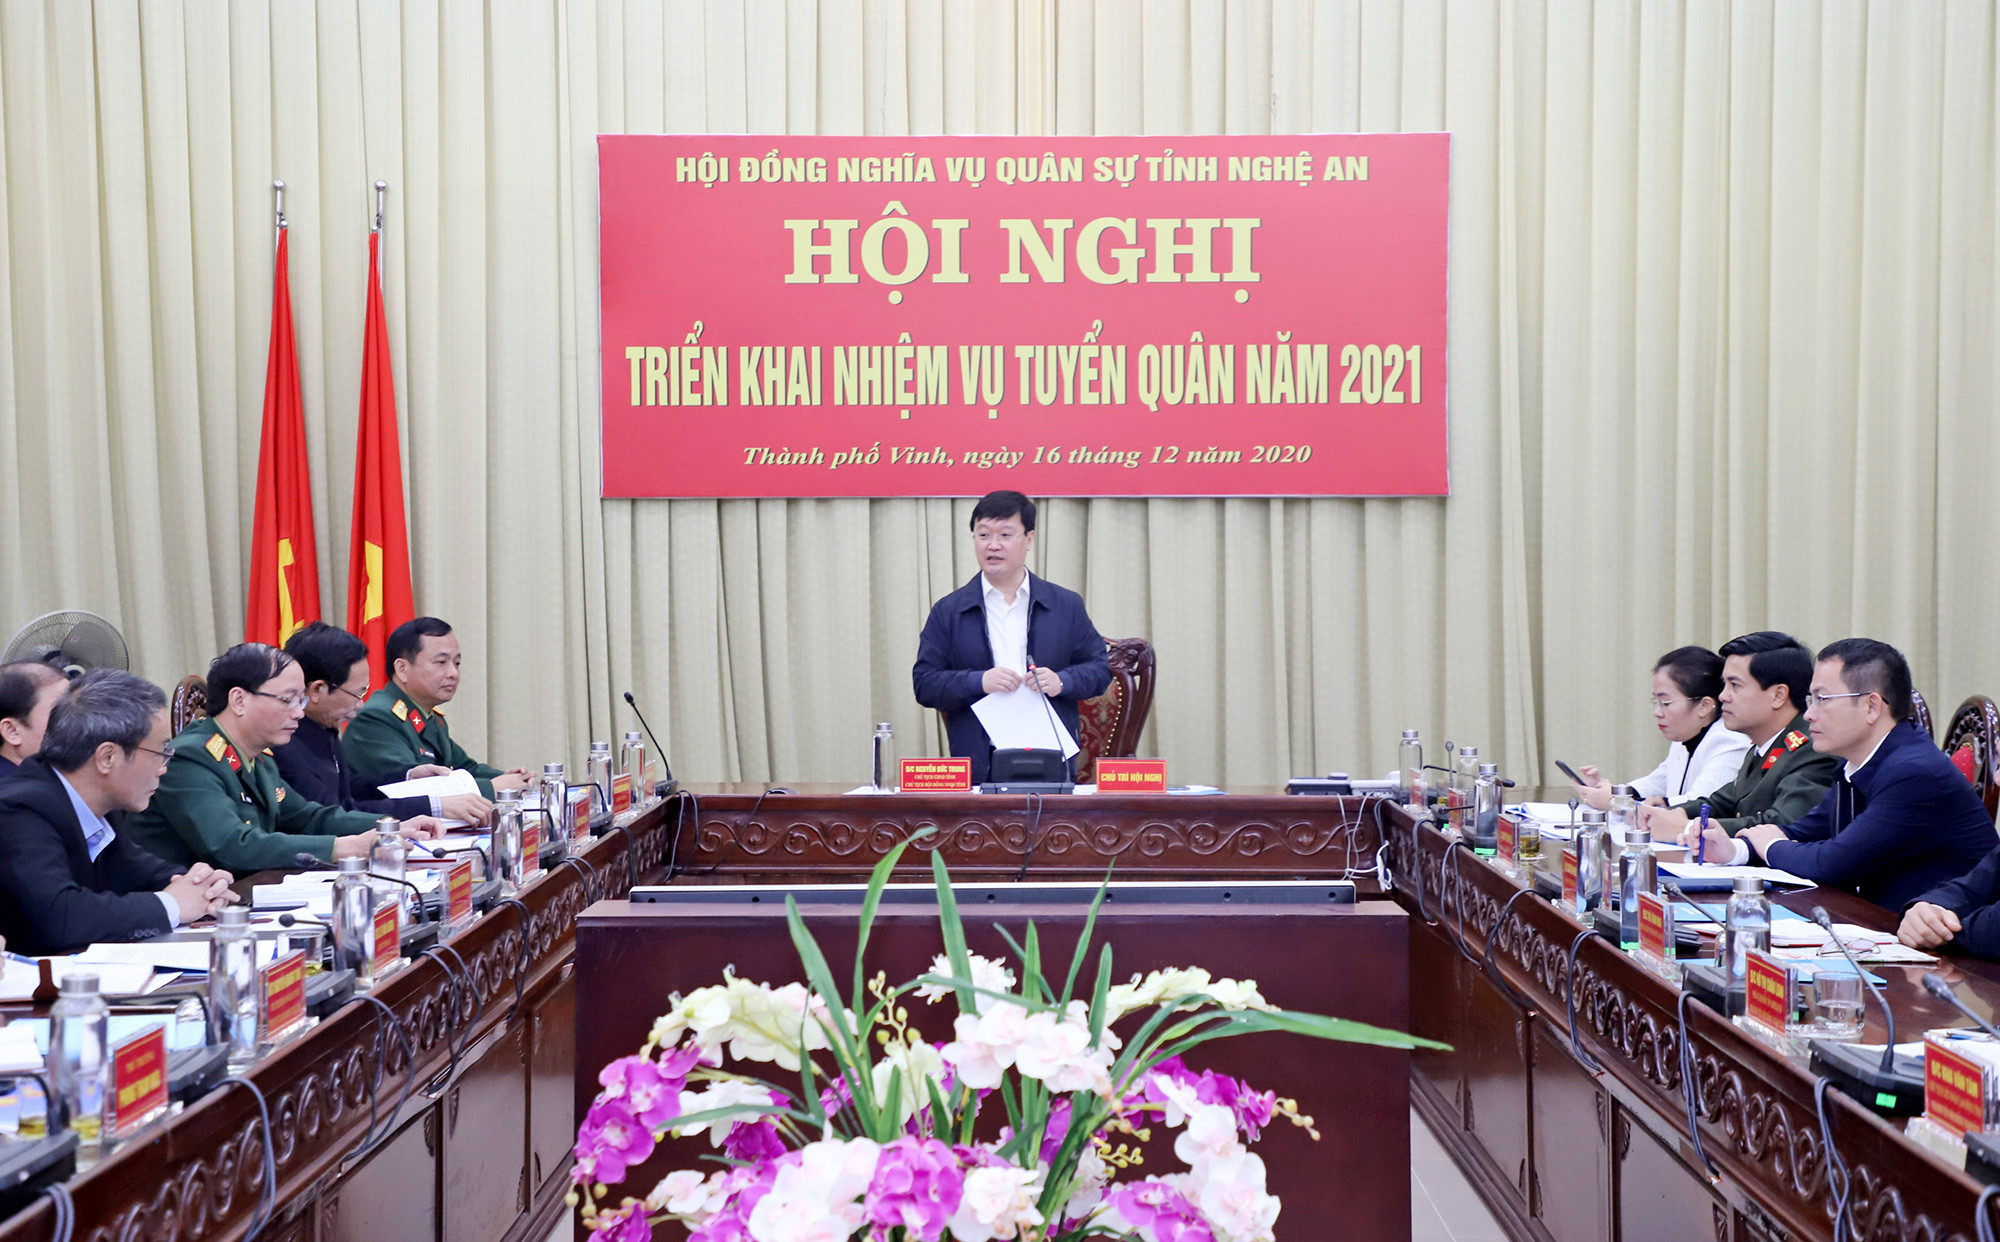 Đồng chí Nguyễn Đức Trung - Chủ tịch UBND tỉnh, Chủ tịch Hội đồng NVQS kết luận Hội nghị. Ảnh: Phạm Bằng